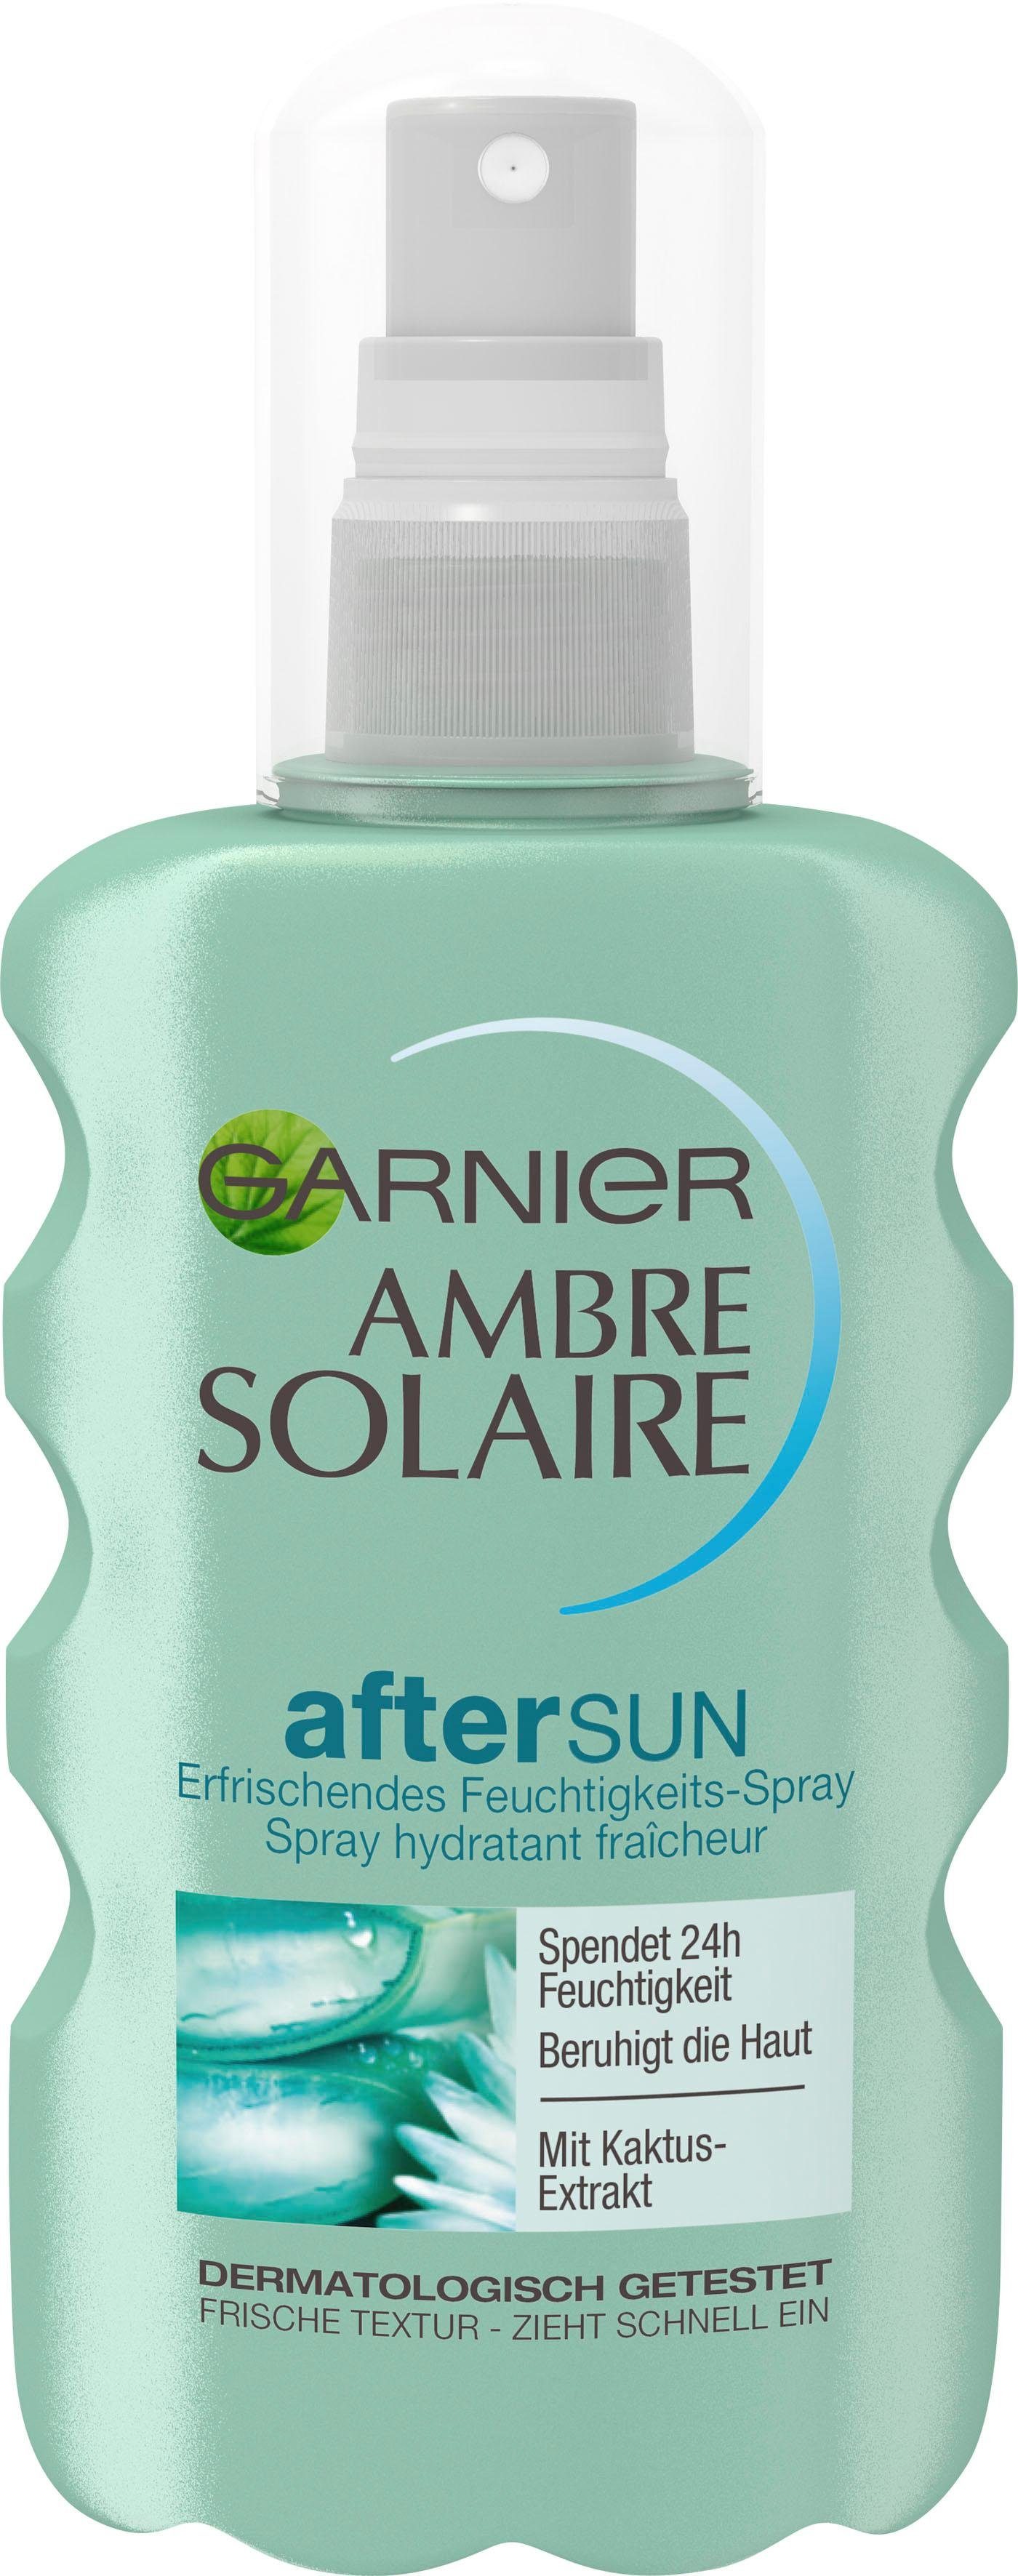 Kaktus-Extrakt Solaire Ambre After Sun-Spray GARNIER mit Feuchtigkeits-Après,